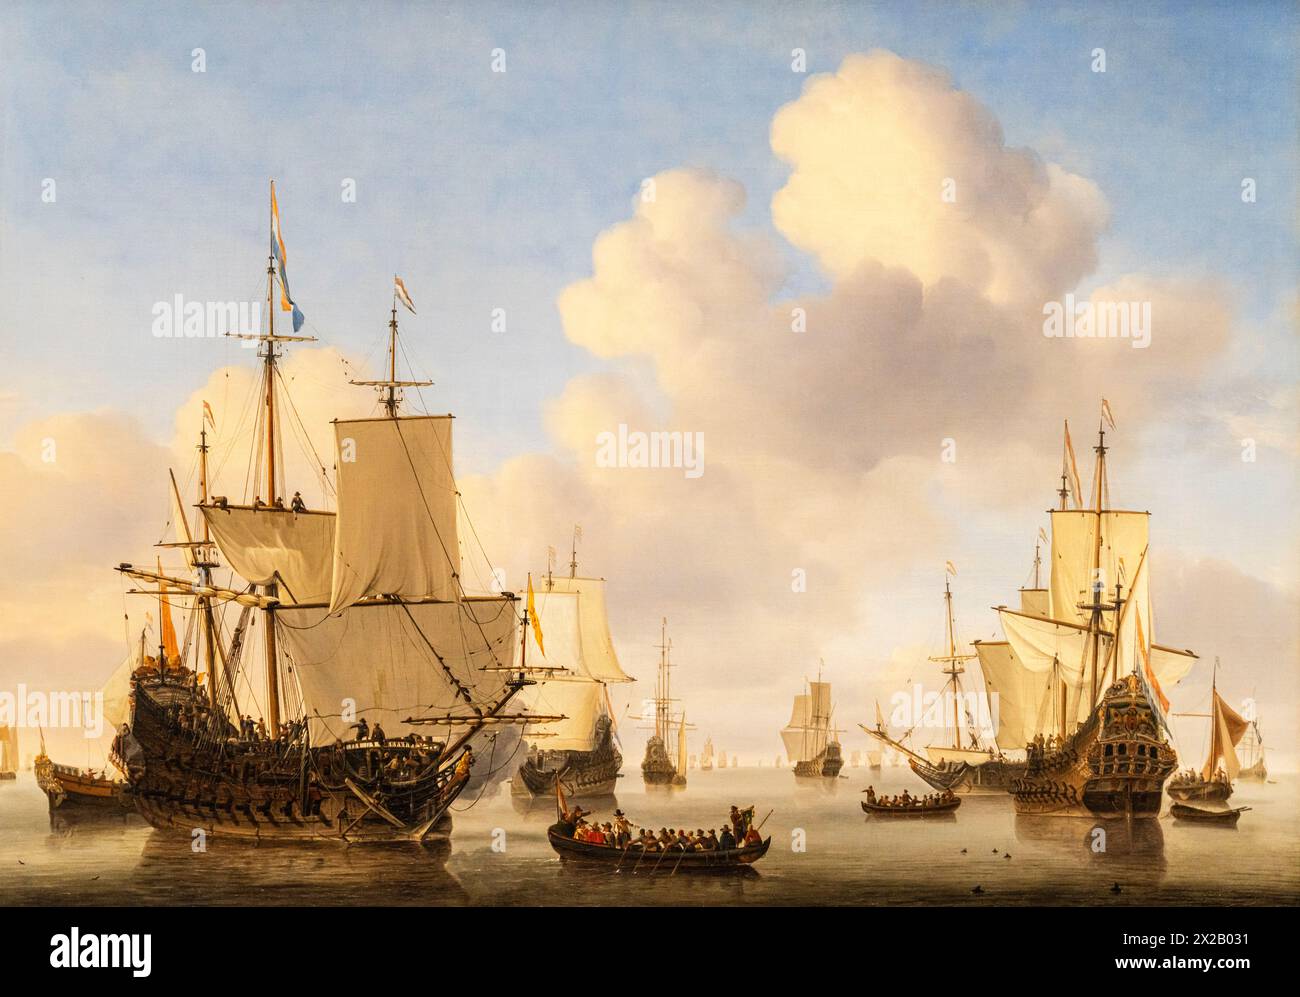 Navires hollandais dans une mer calme, Willem van de Velde II, 1665, Amsterdam, pays-Bas Banque D'Images